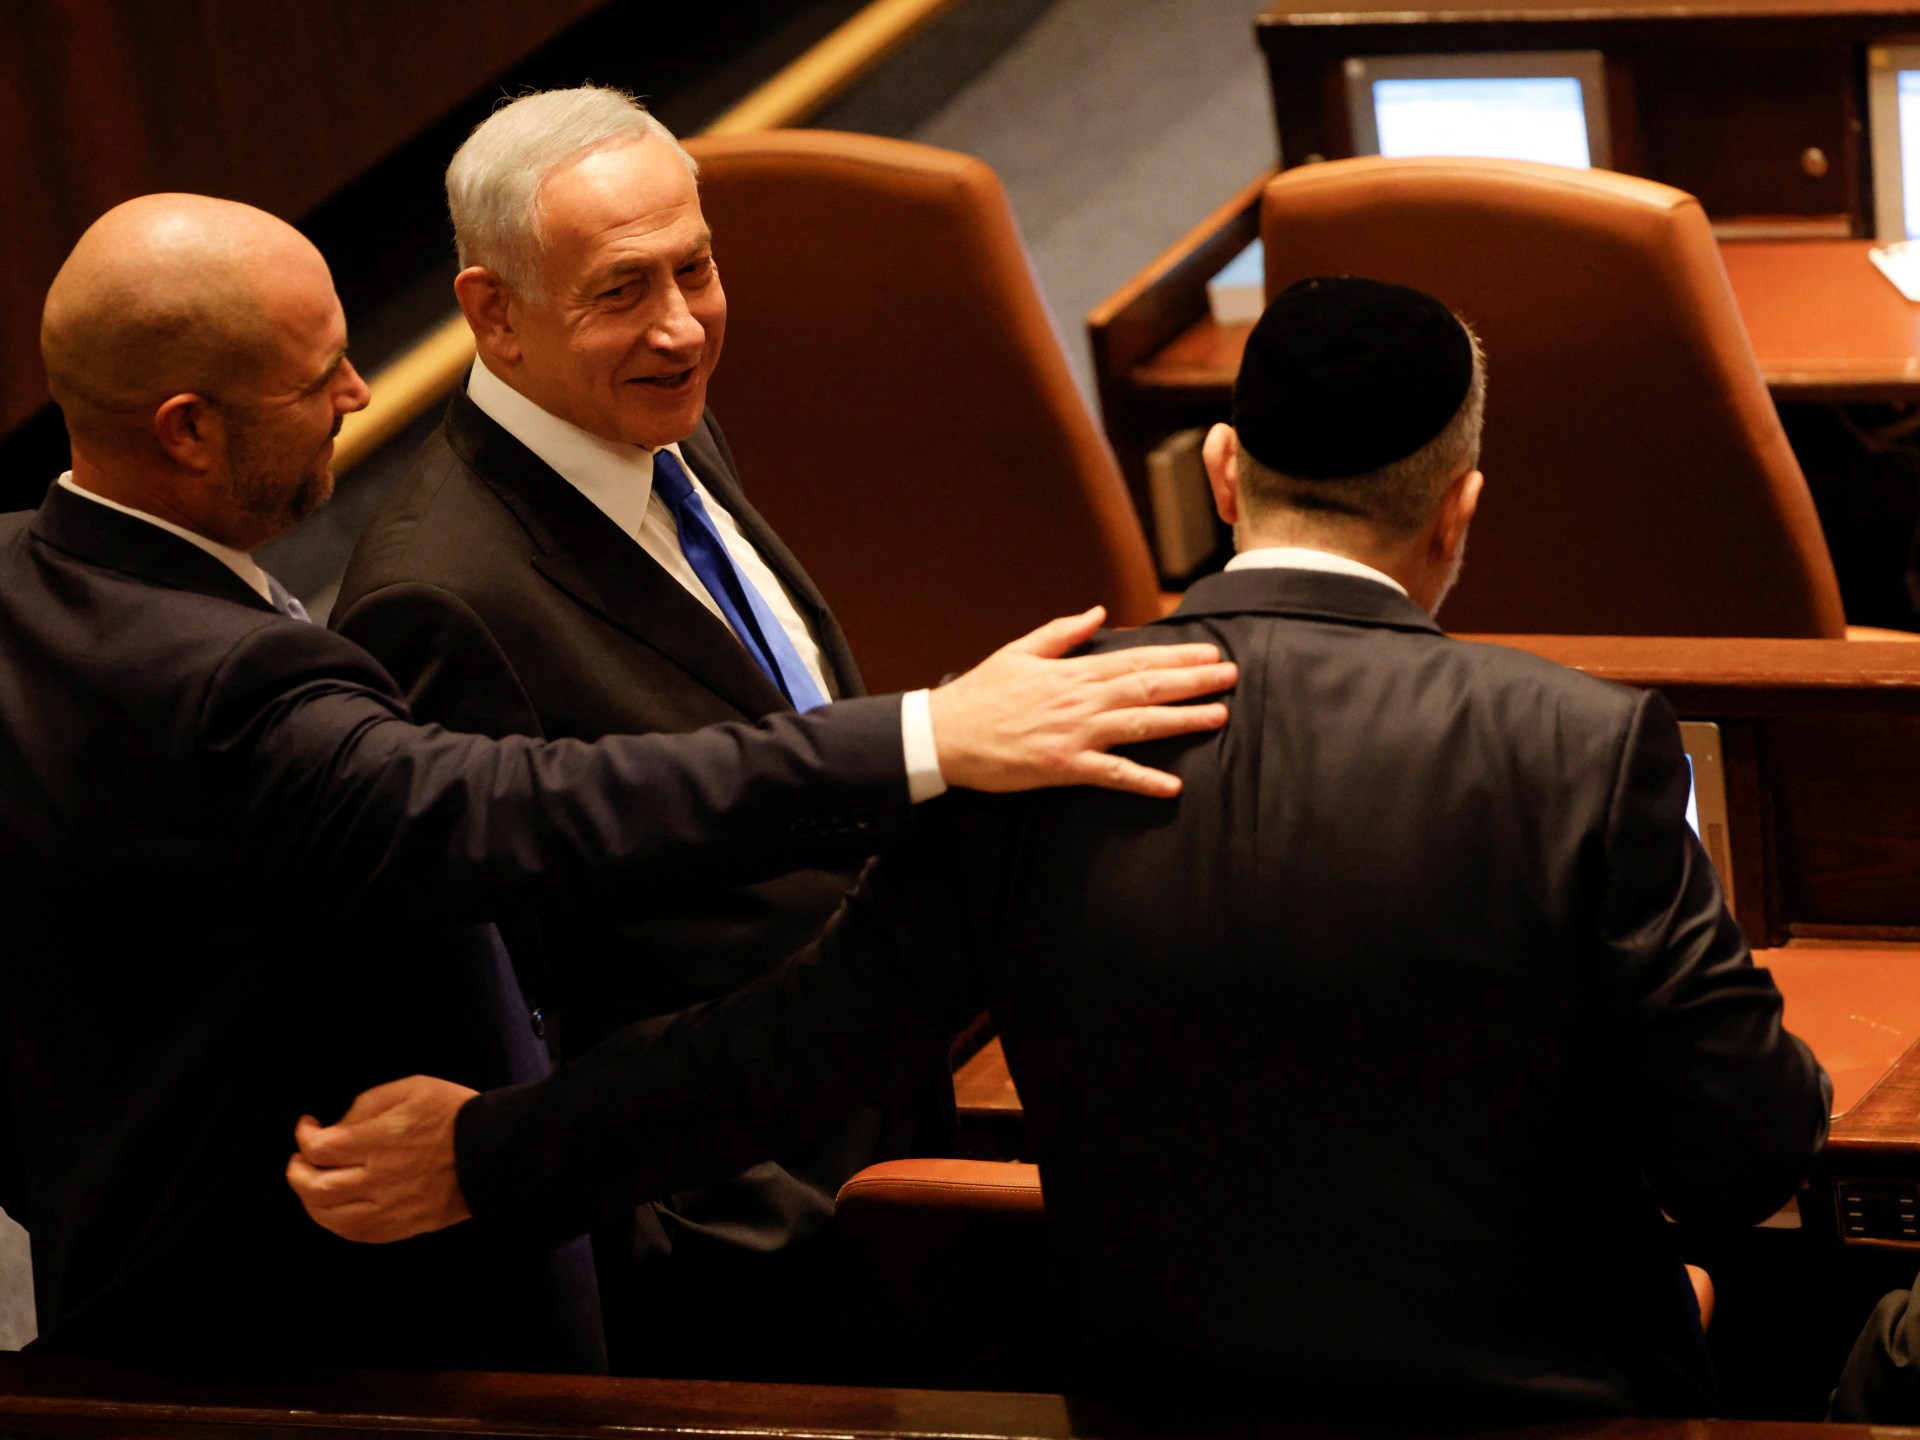 Benjamin Netanyahu keert terug als premier van de radicale regering van Israël |  Nieuws over het Israëlisch-Palestijns conflict